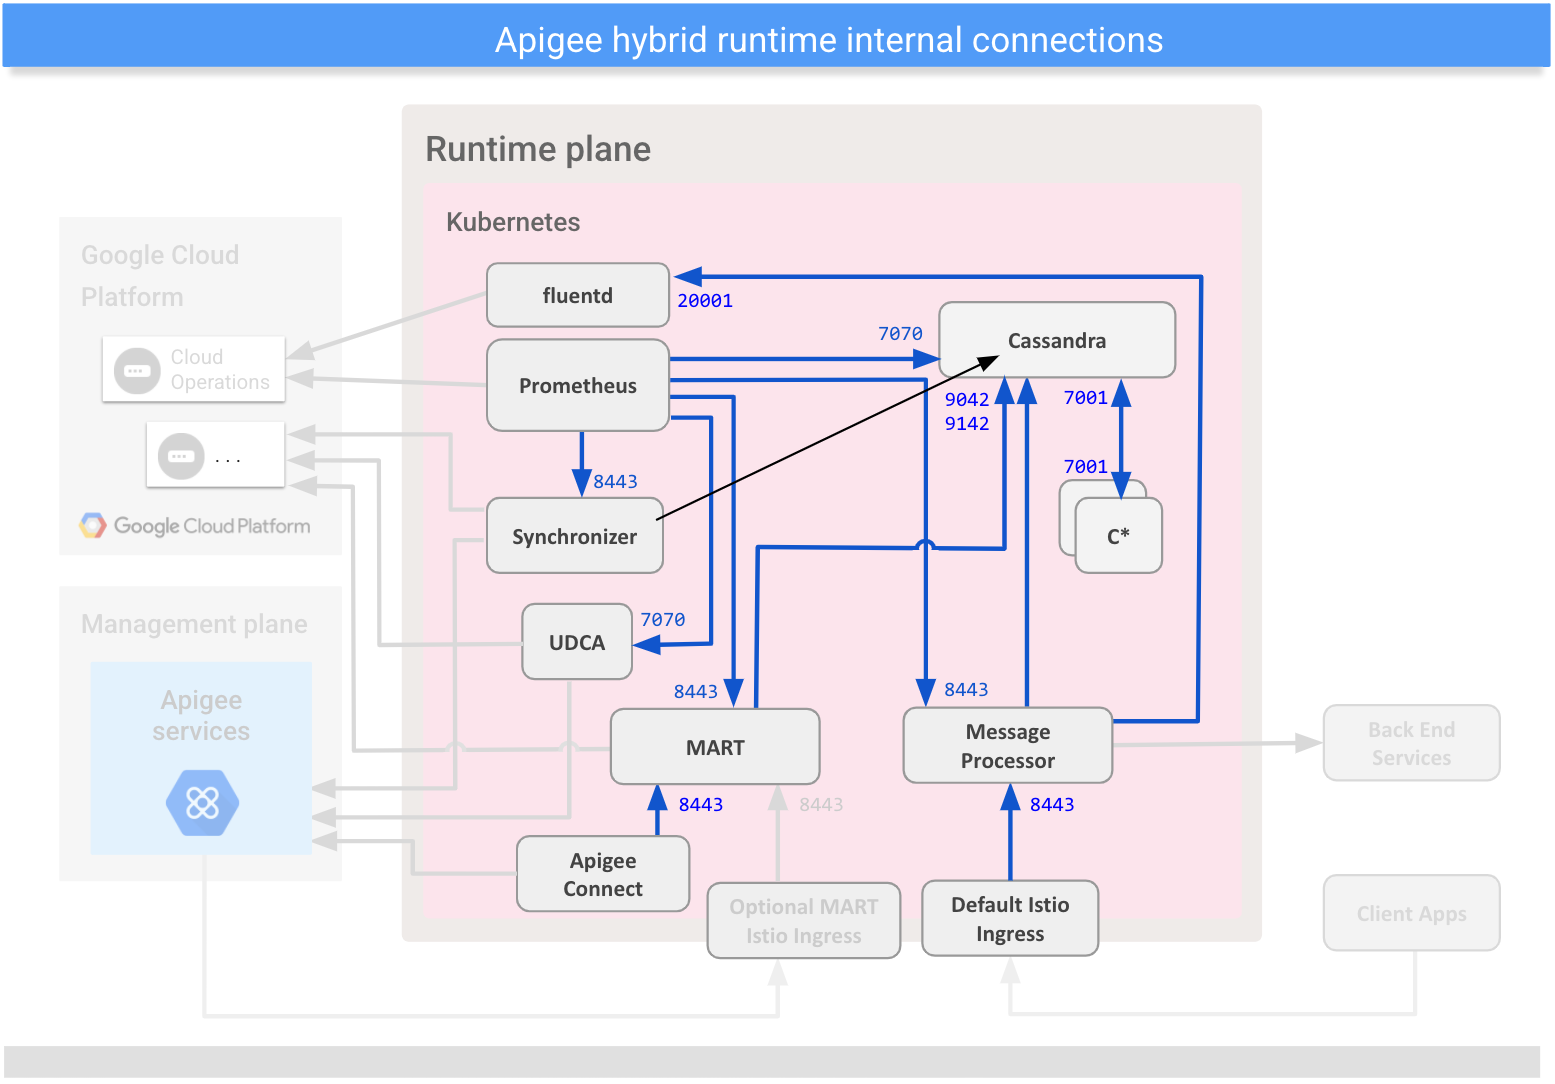 Affiche les connexions entre les composants internes du plan d'exécution hybride